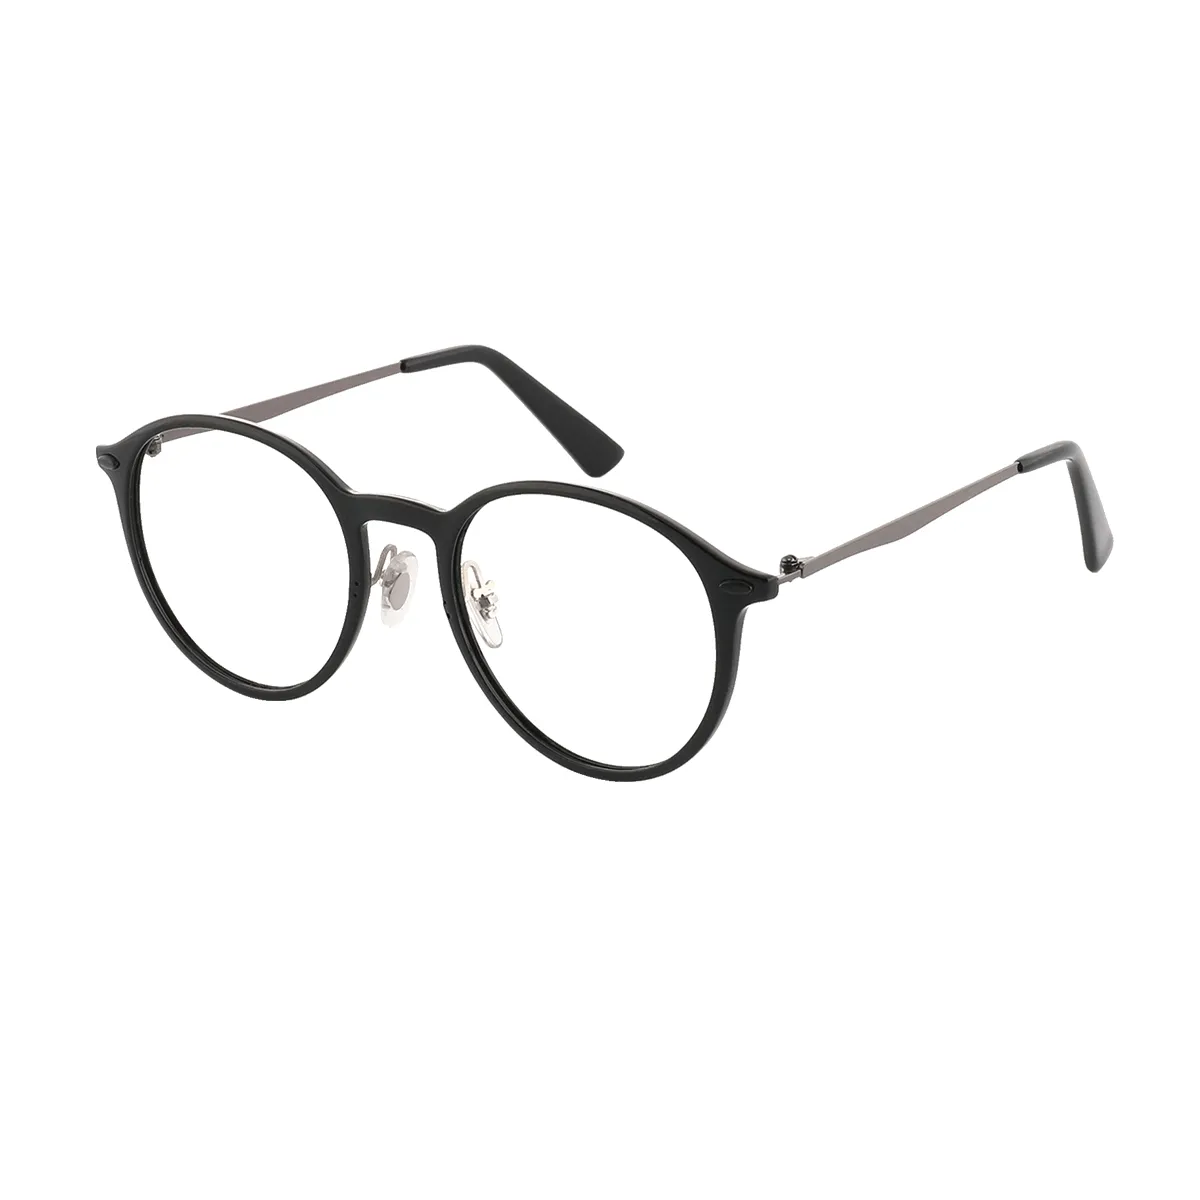 Hamm - Oval  Glasses for Men & Women